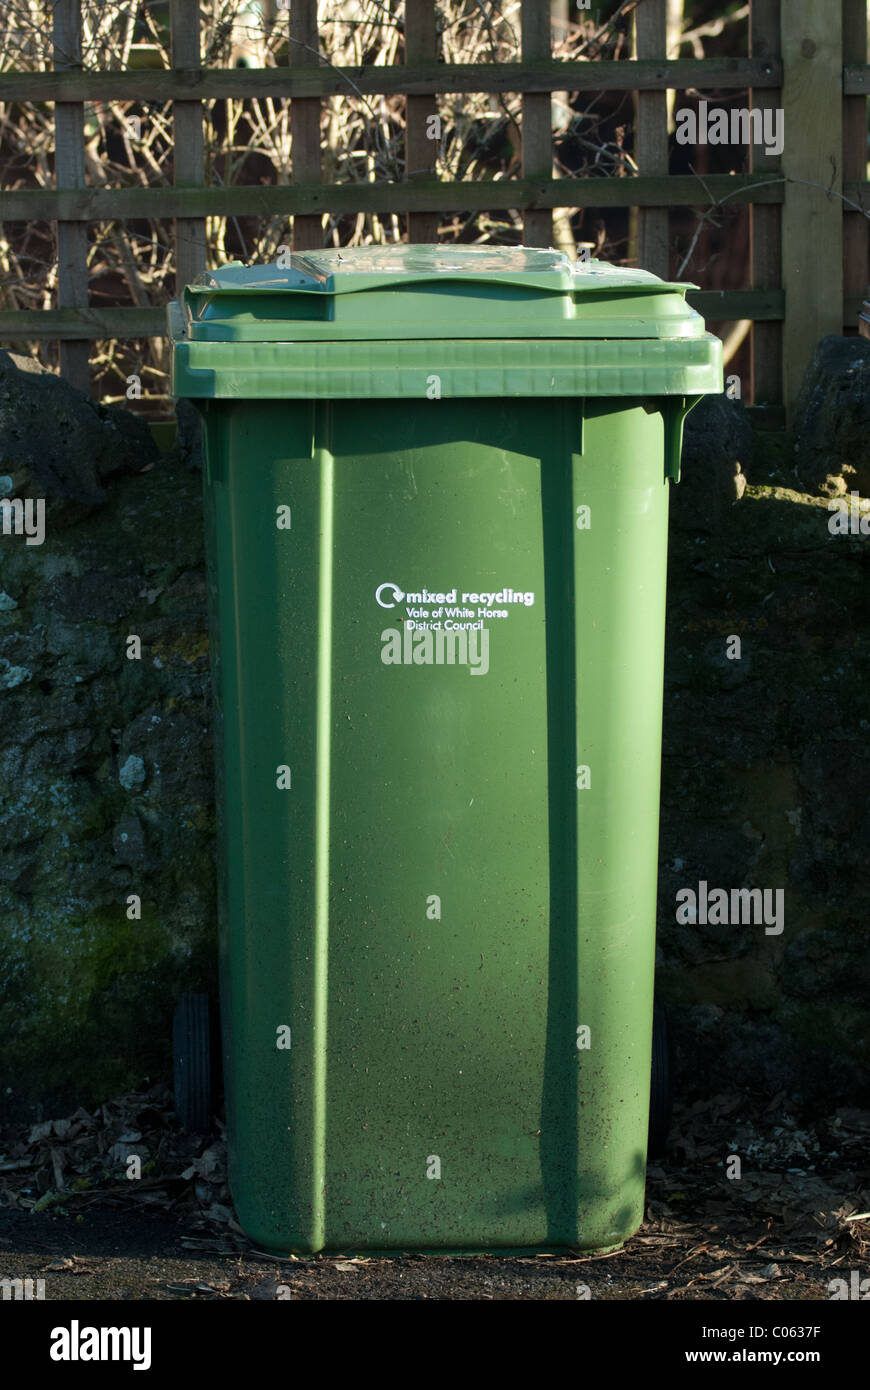 Ein grüner Kunststoff Wheelie bin, wartet auf einen vierzehntägigen Rat recycling Sammlung in einem UK-Land-Dorf. Stockfoto